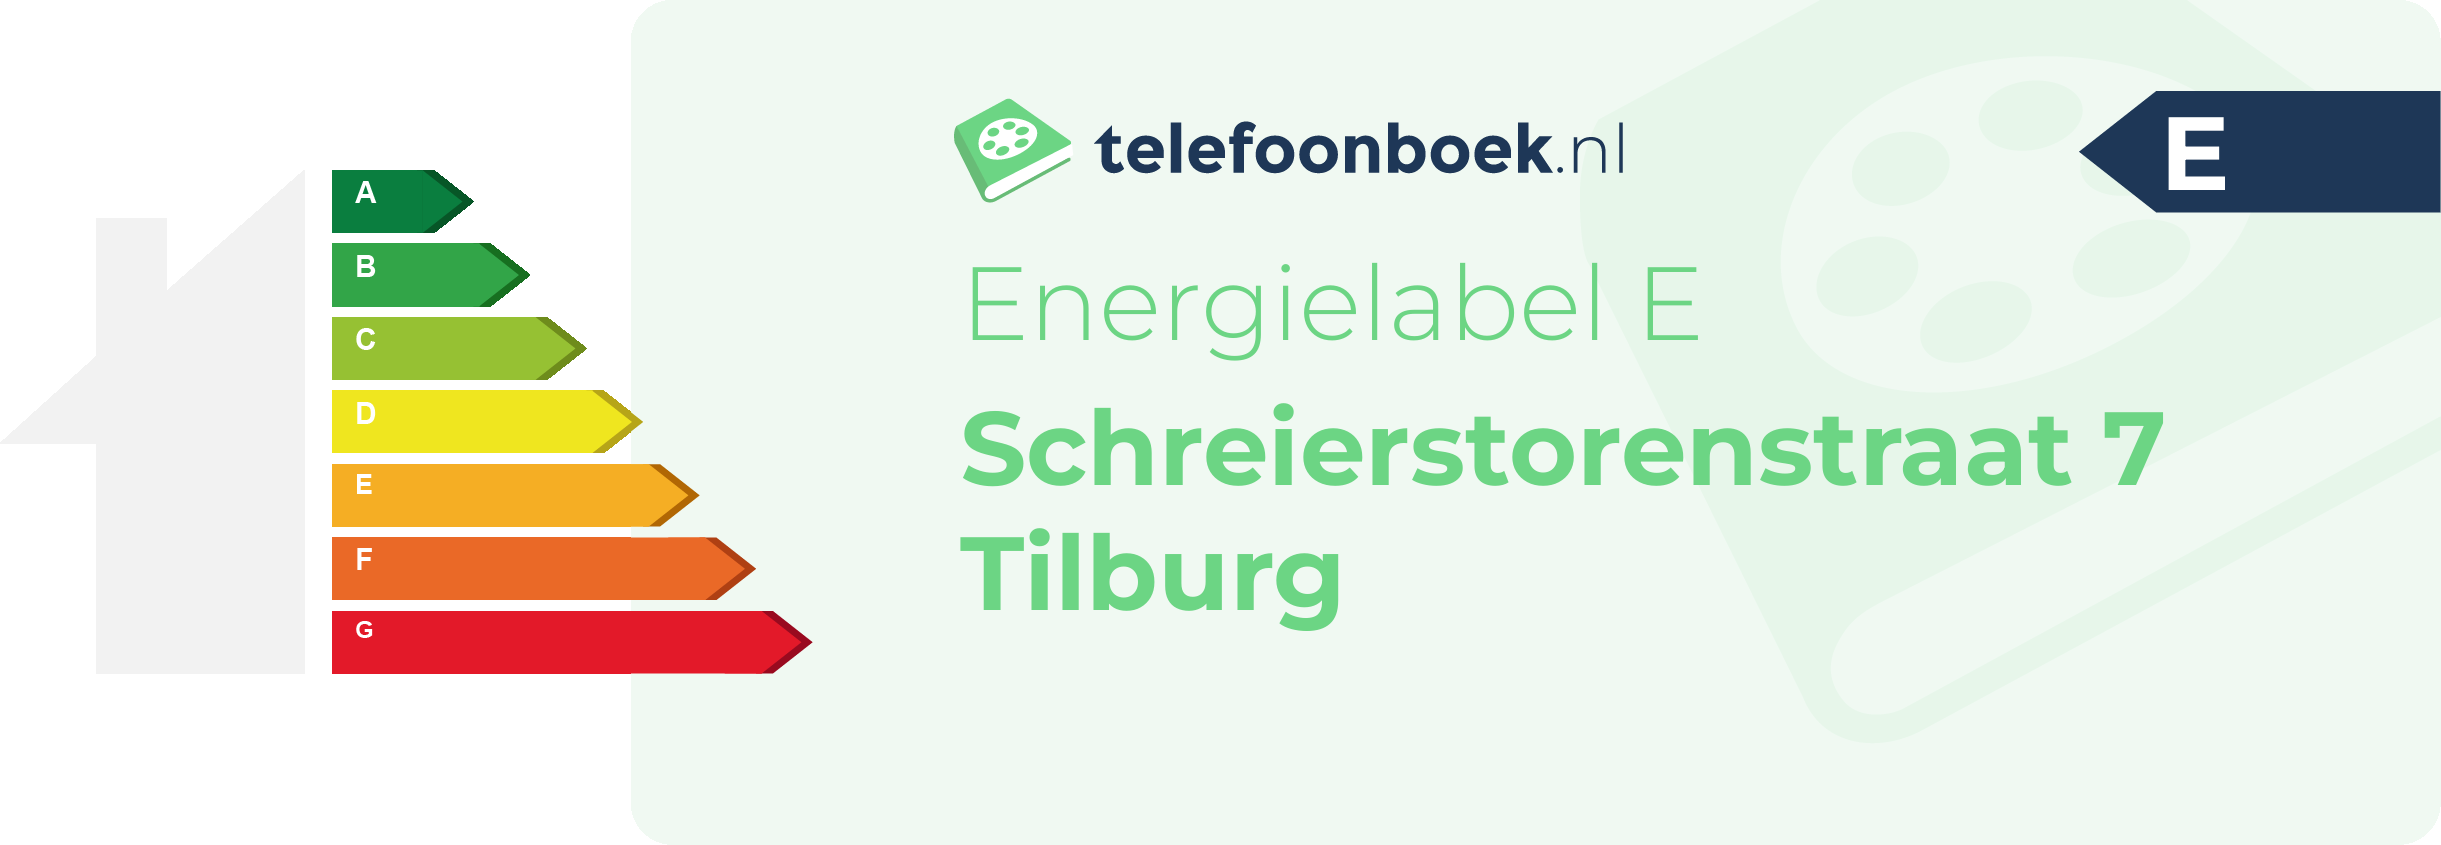 Energielabel Schreierstorenstraat 7 Tilburg